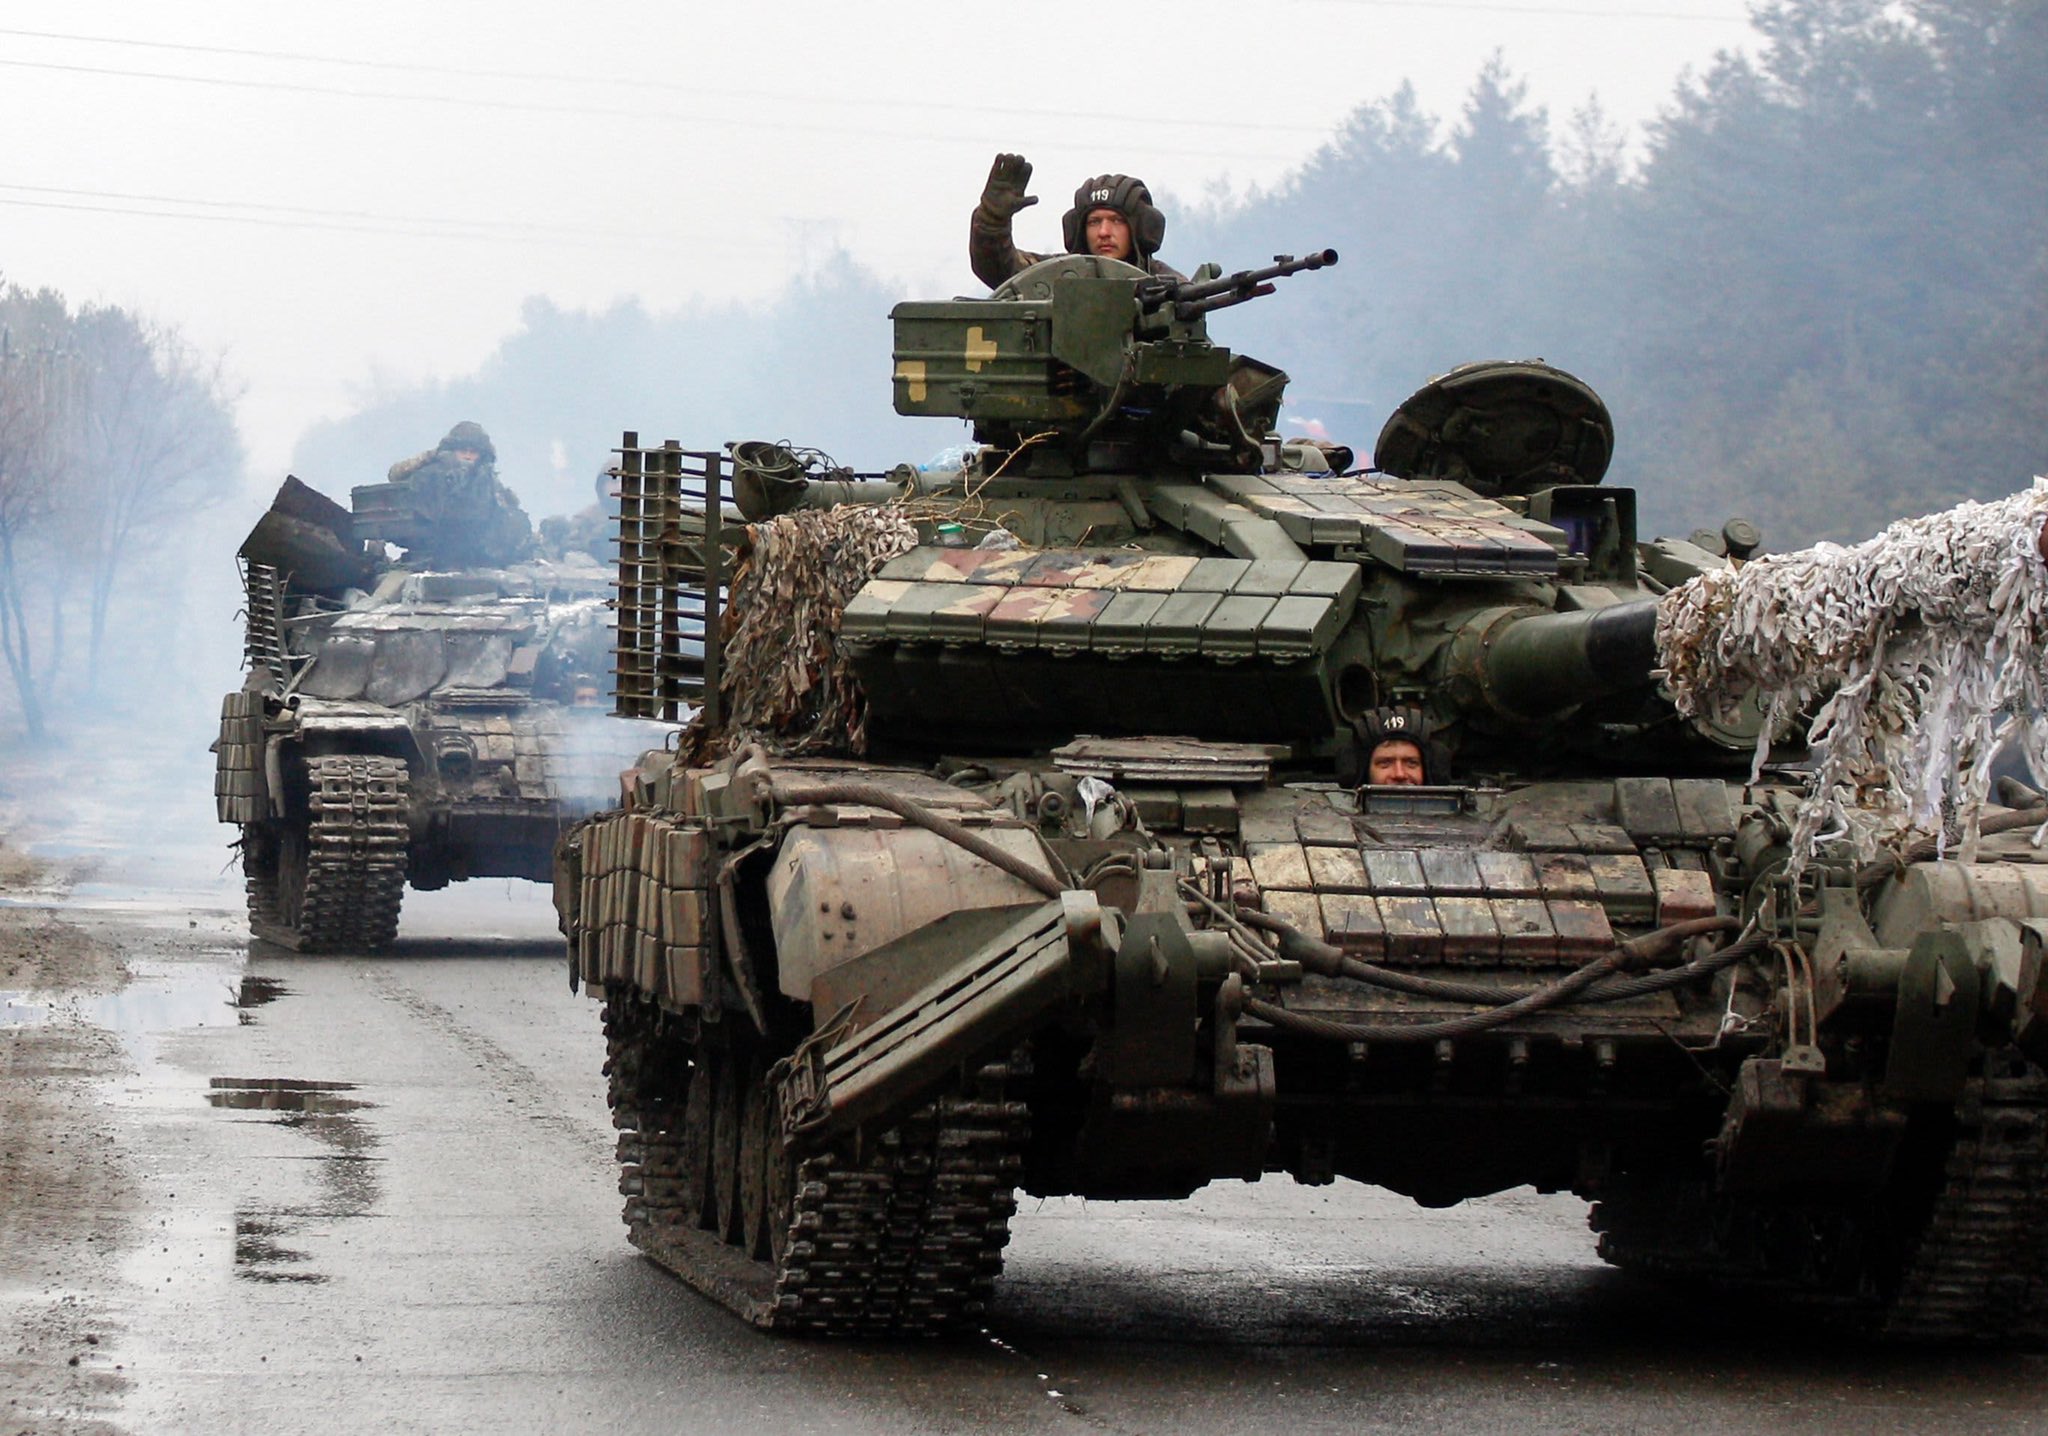 Metoda prin care Ucraina și-a mărit numărul de tancuri, deși nu a primit vreunul din străinătate